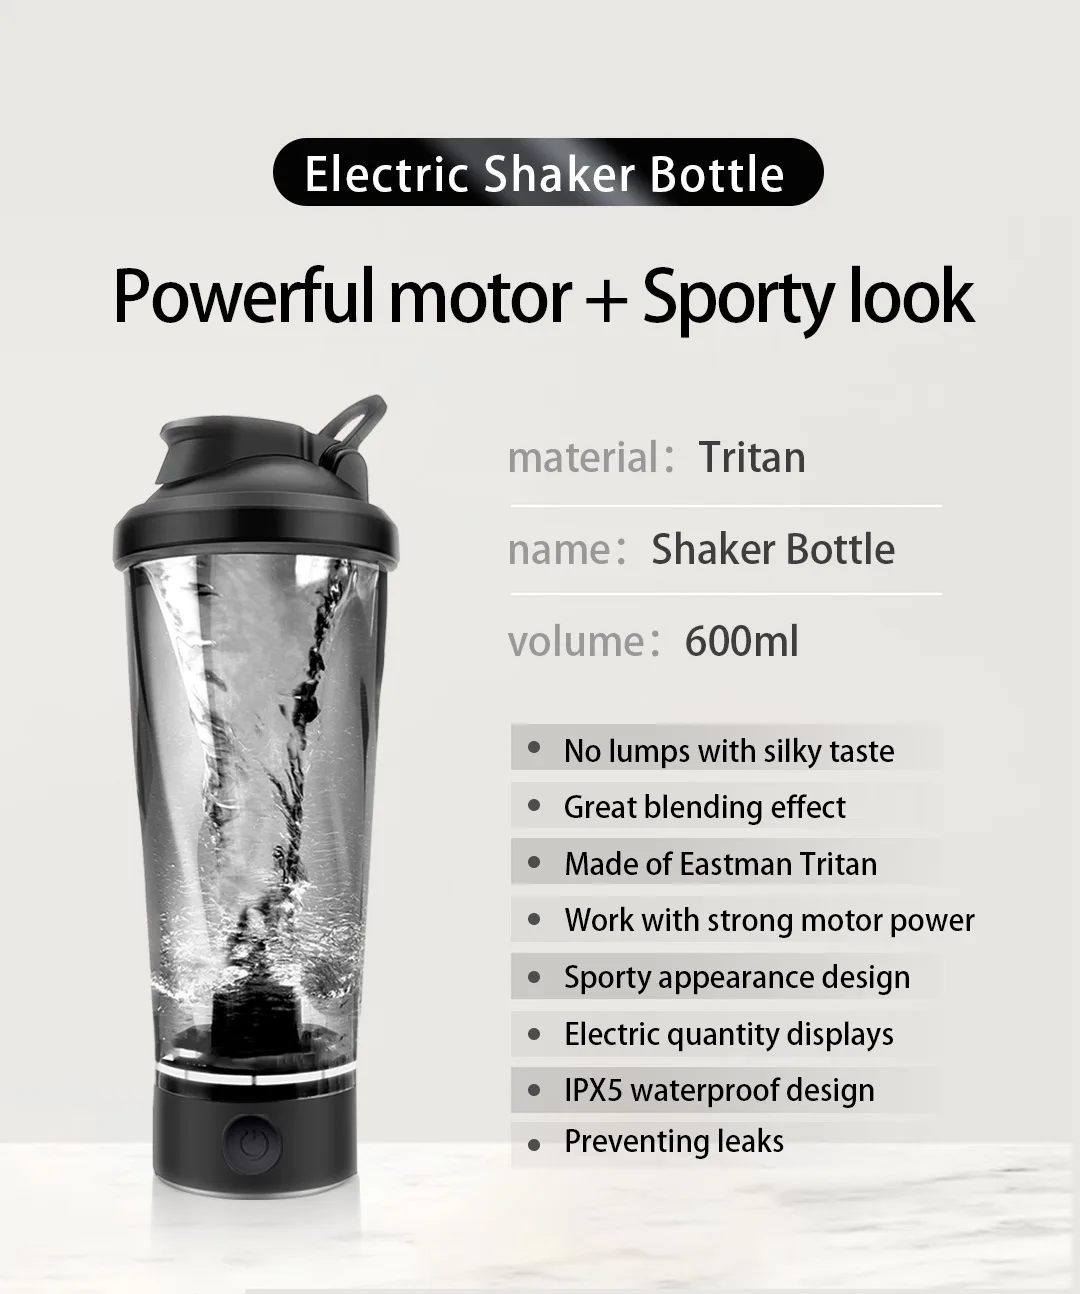 Shaker bottle-600ml